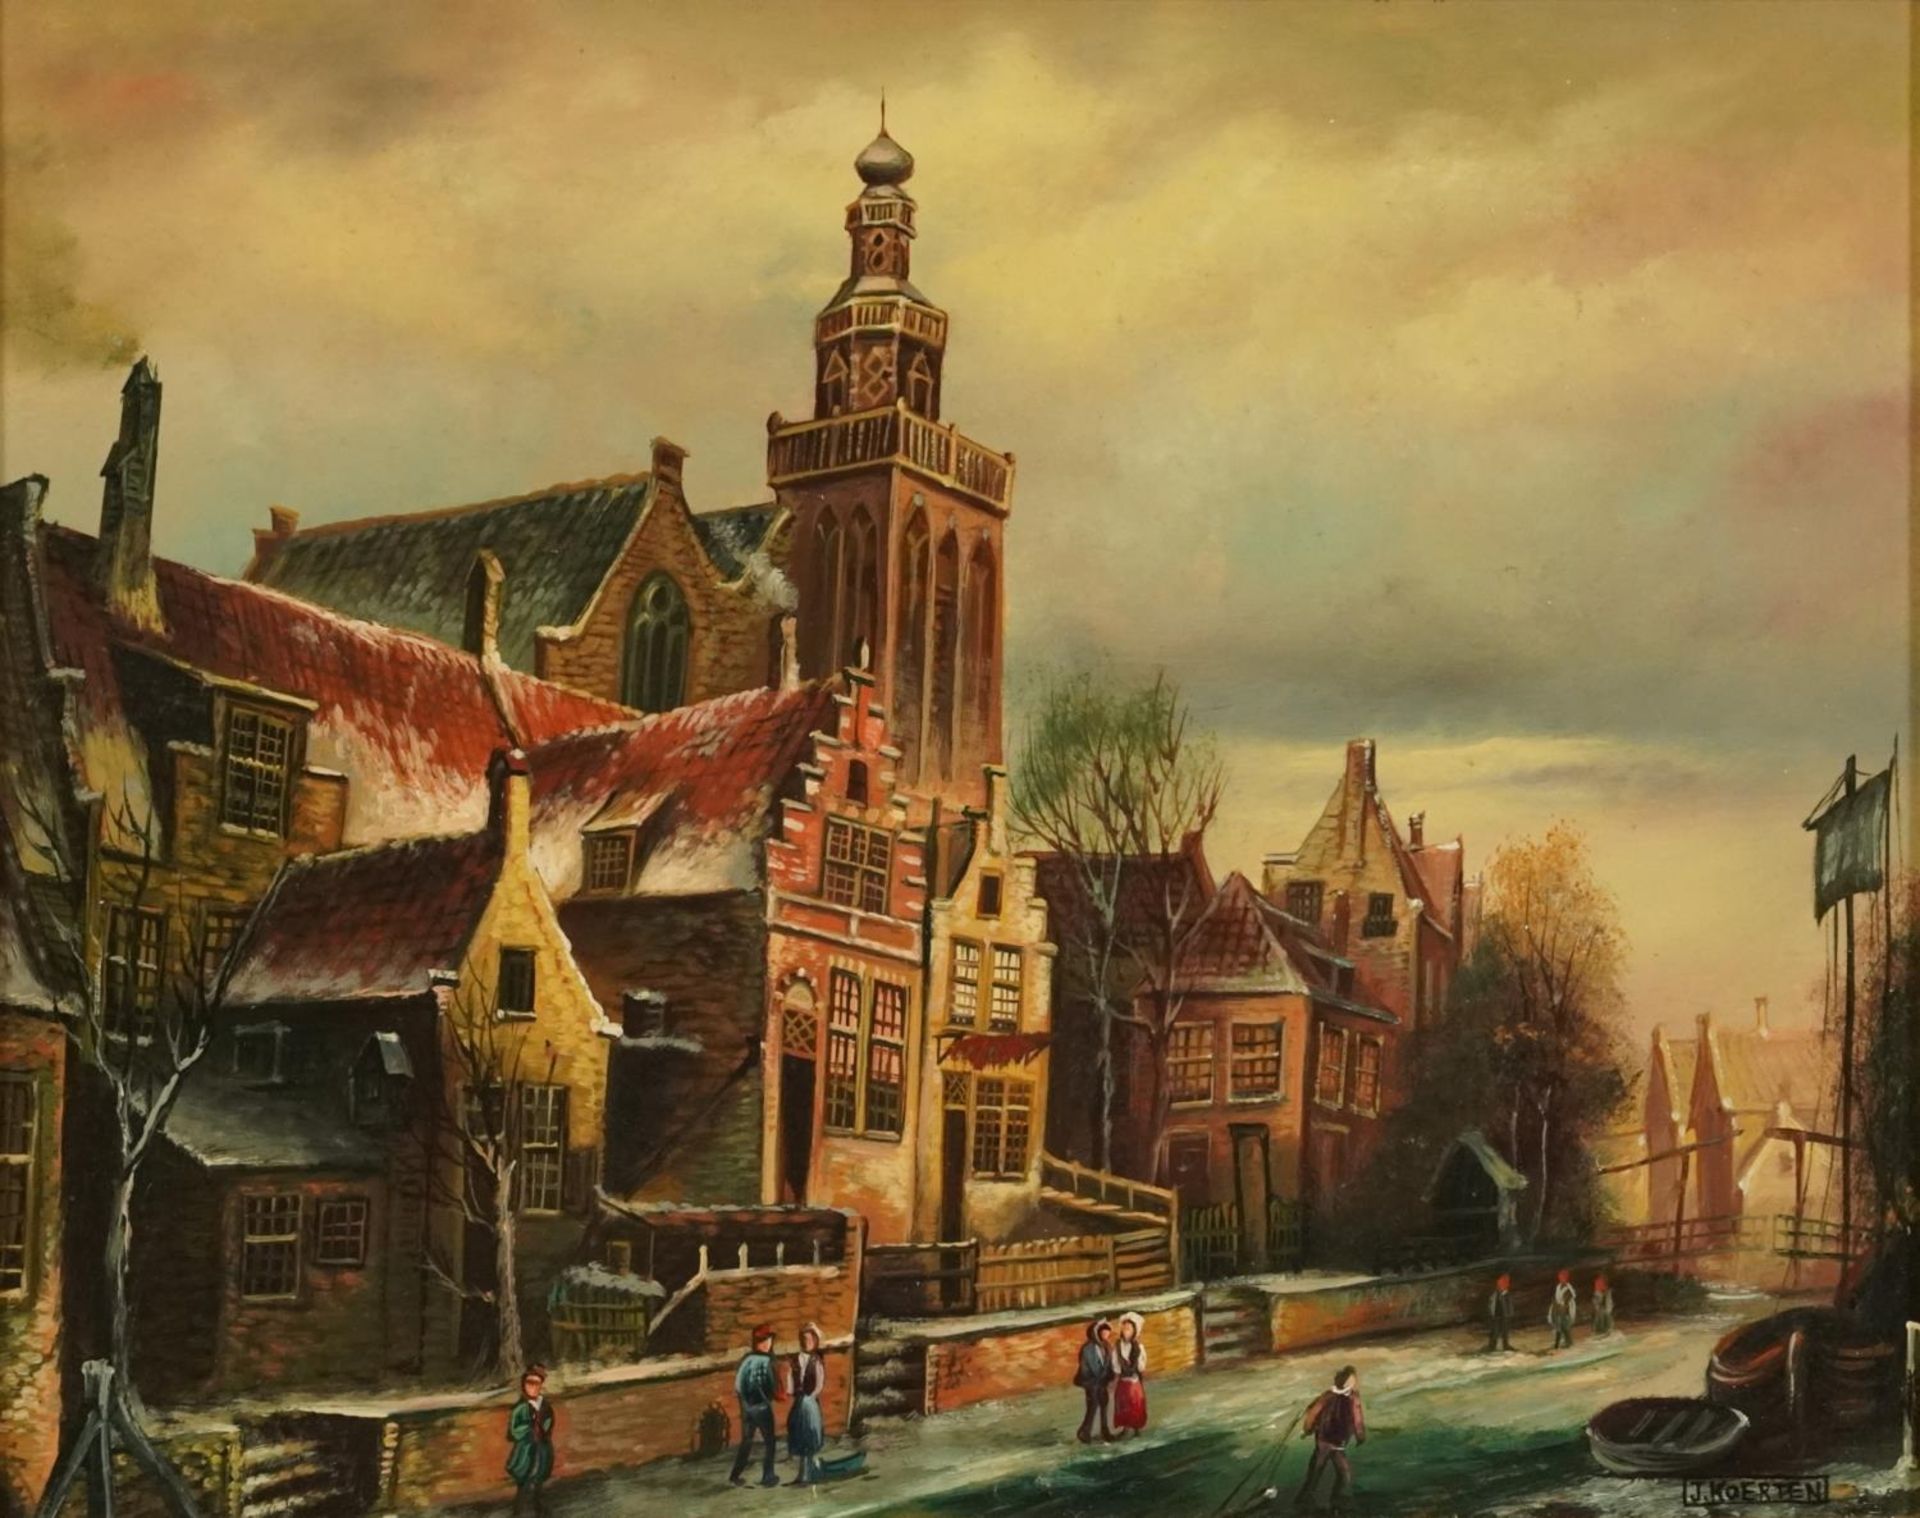 J Coerten - Winter street scene, Old Master style oil on wood panel, mounted and framed, 29cm x 23cm